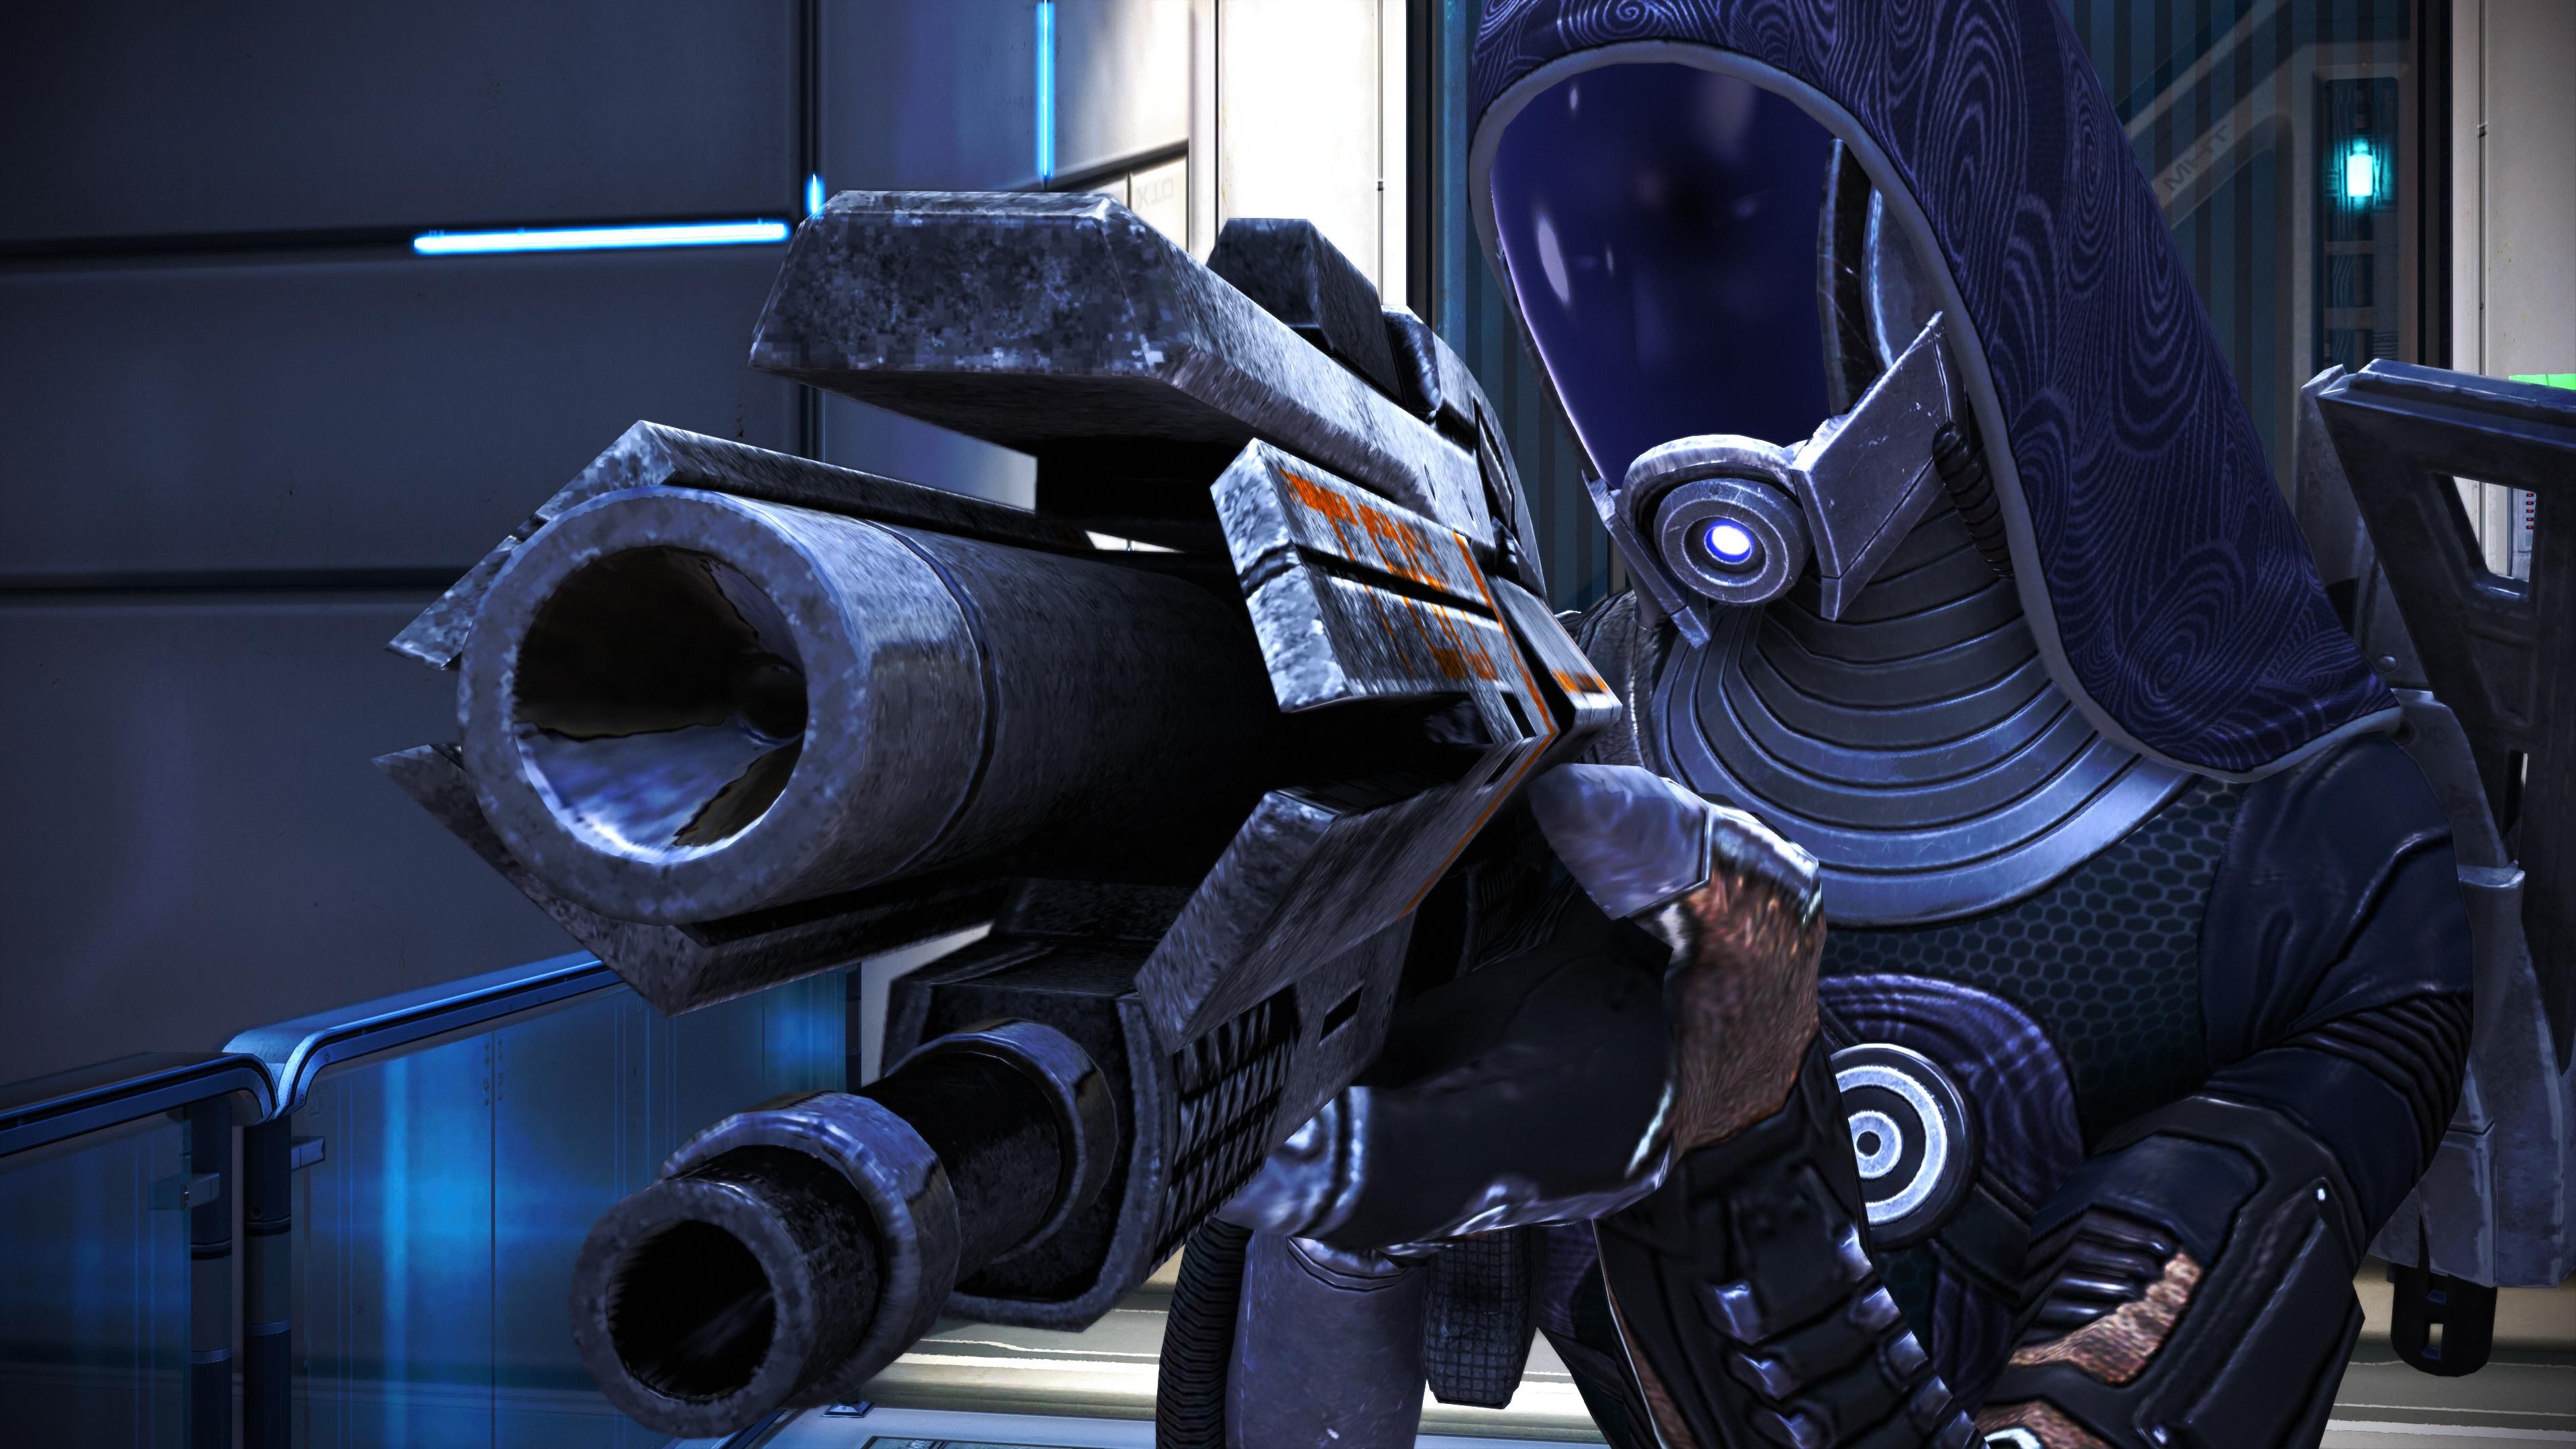 Mass Effect™ издание Legendary for windows instal free